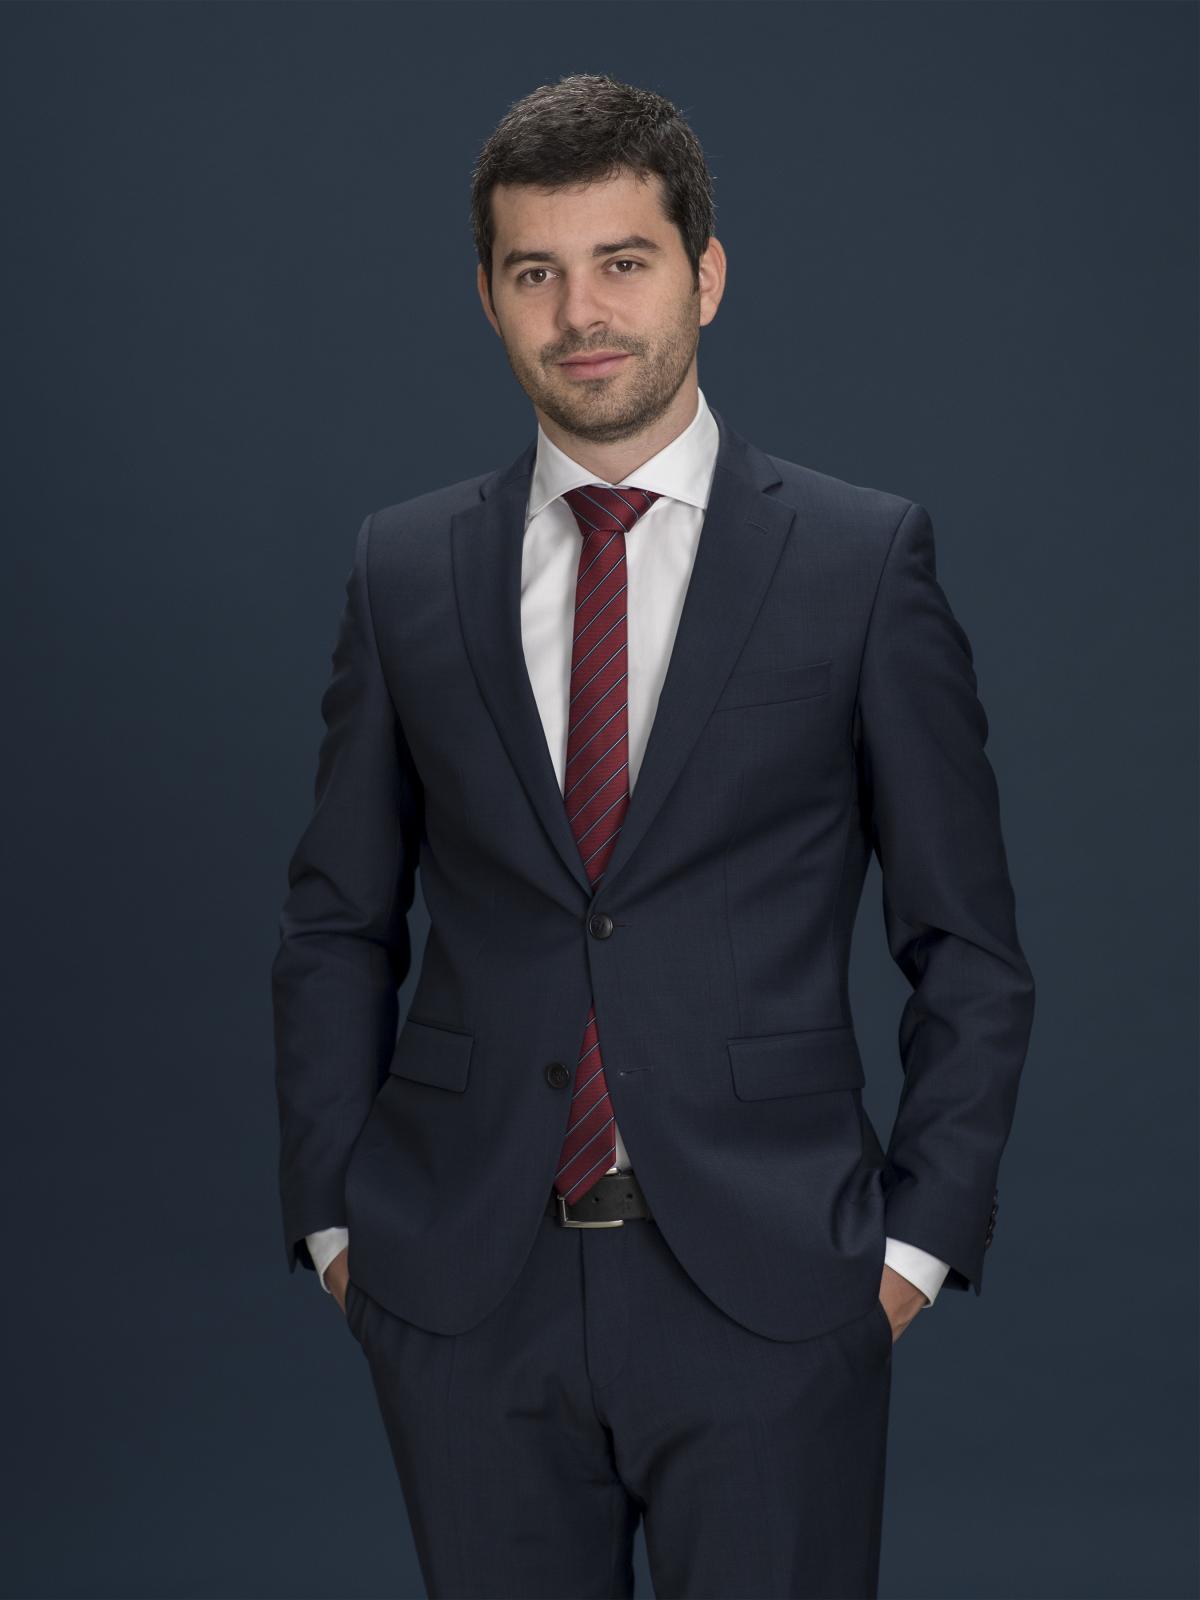 MLaw Matthias Meier - Attorney-at-Law